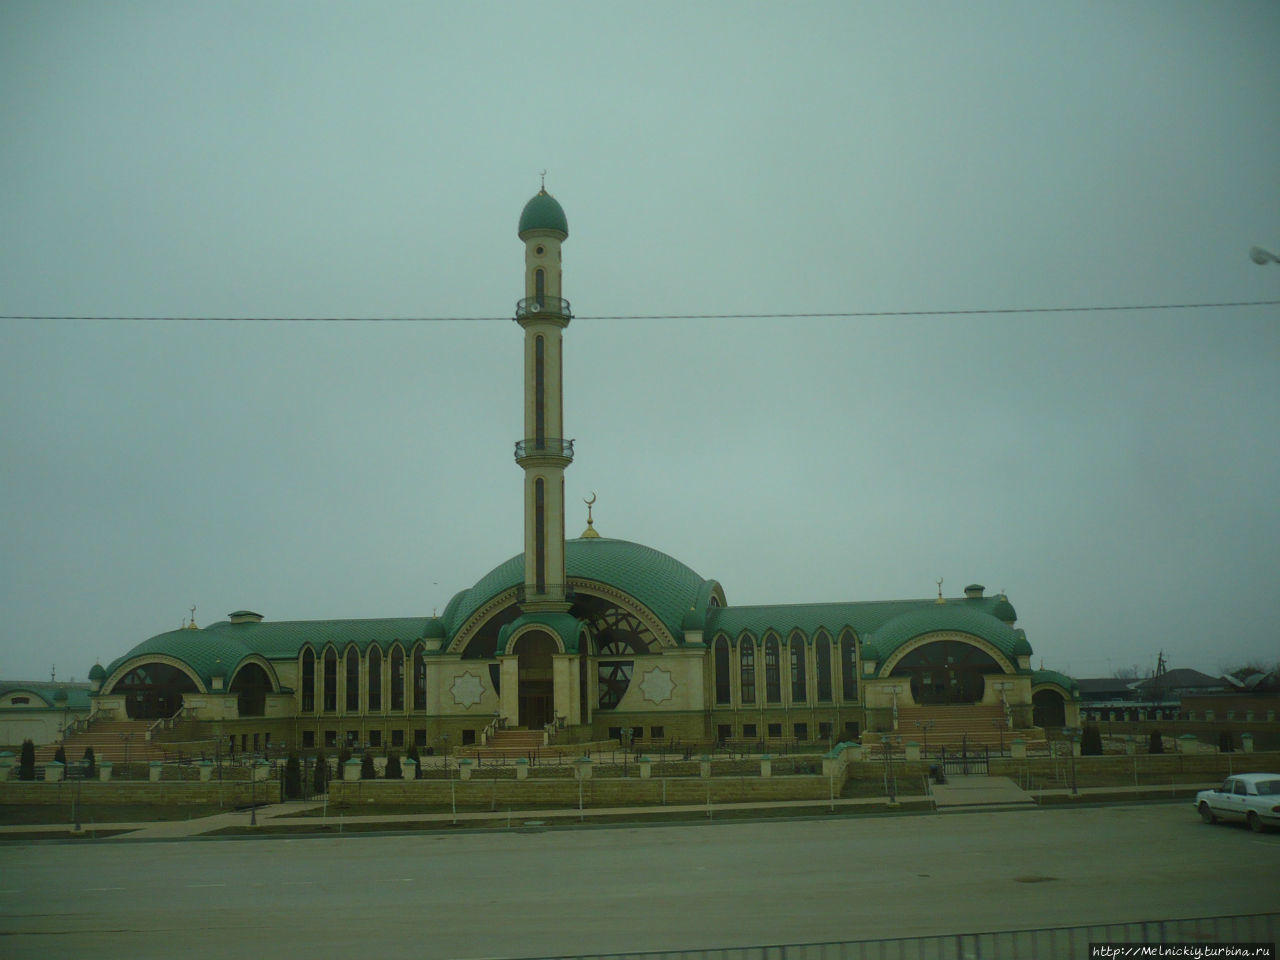 Мечеть им. Магомед-Башир-хаджи Арсанукаева Алхан-Чурт, Россия